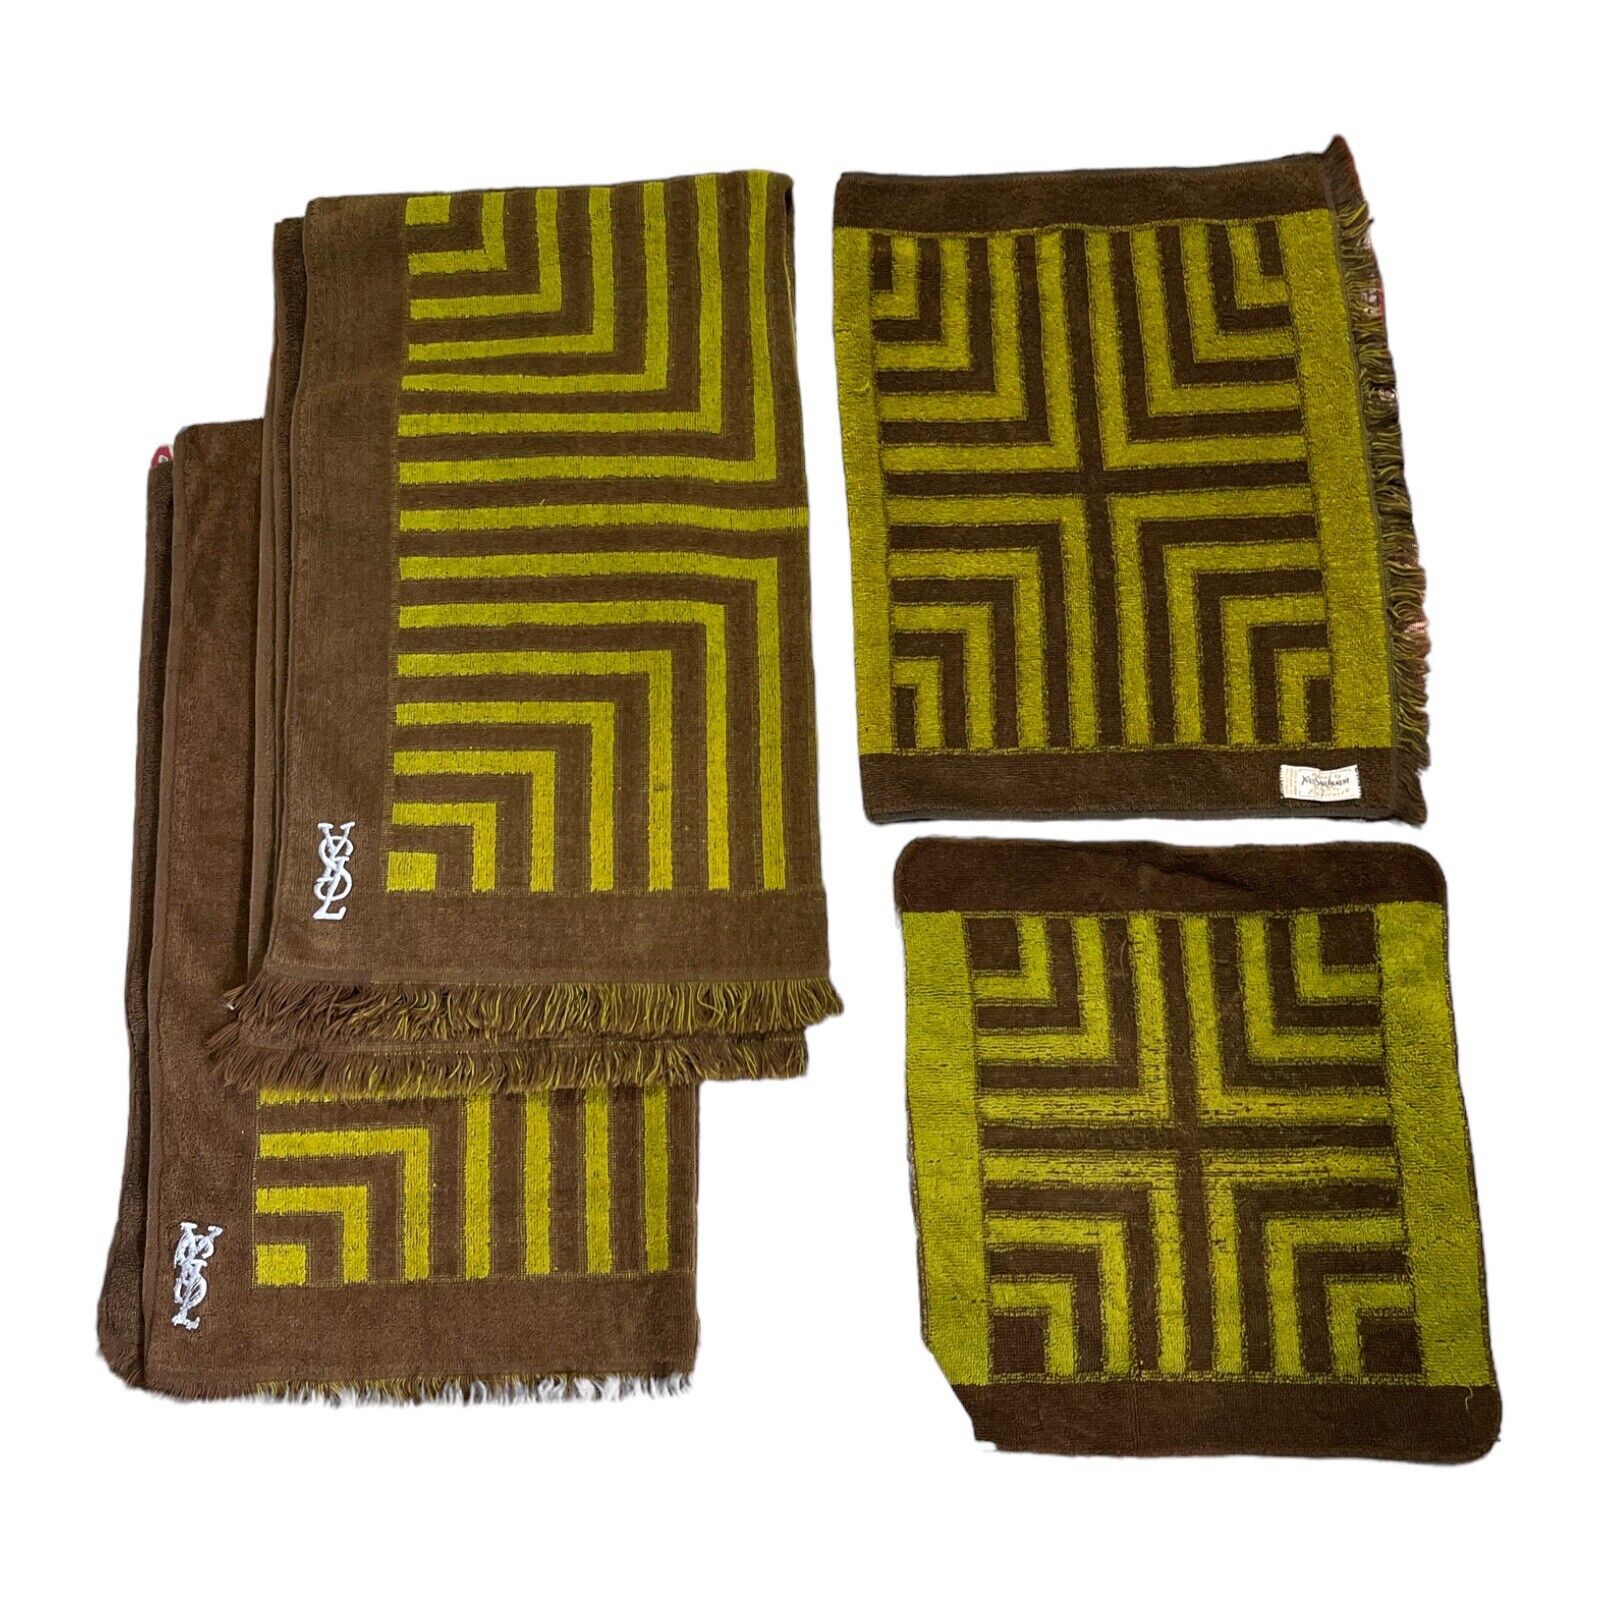 Vintage Yves Saint Laurent Towel Set 4 Piece Geometric Woven By Fieldcrest 70s